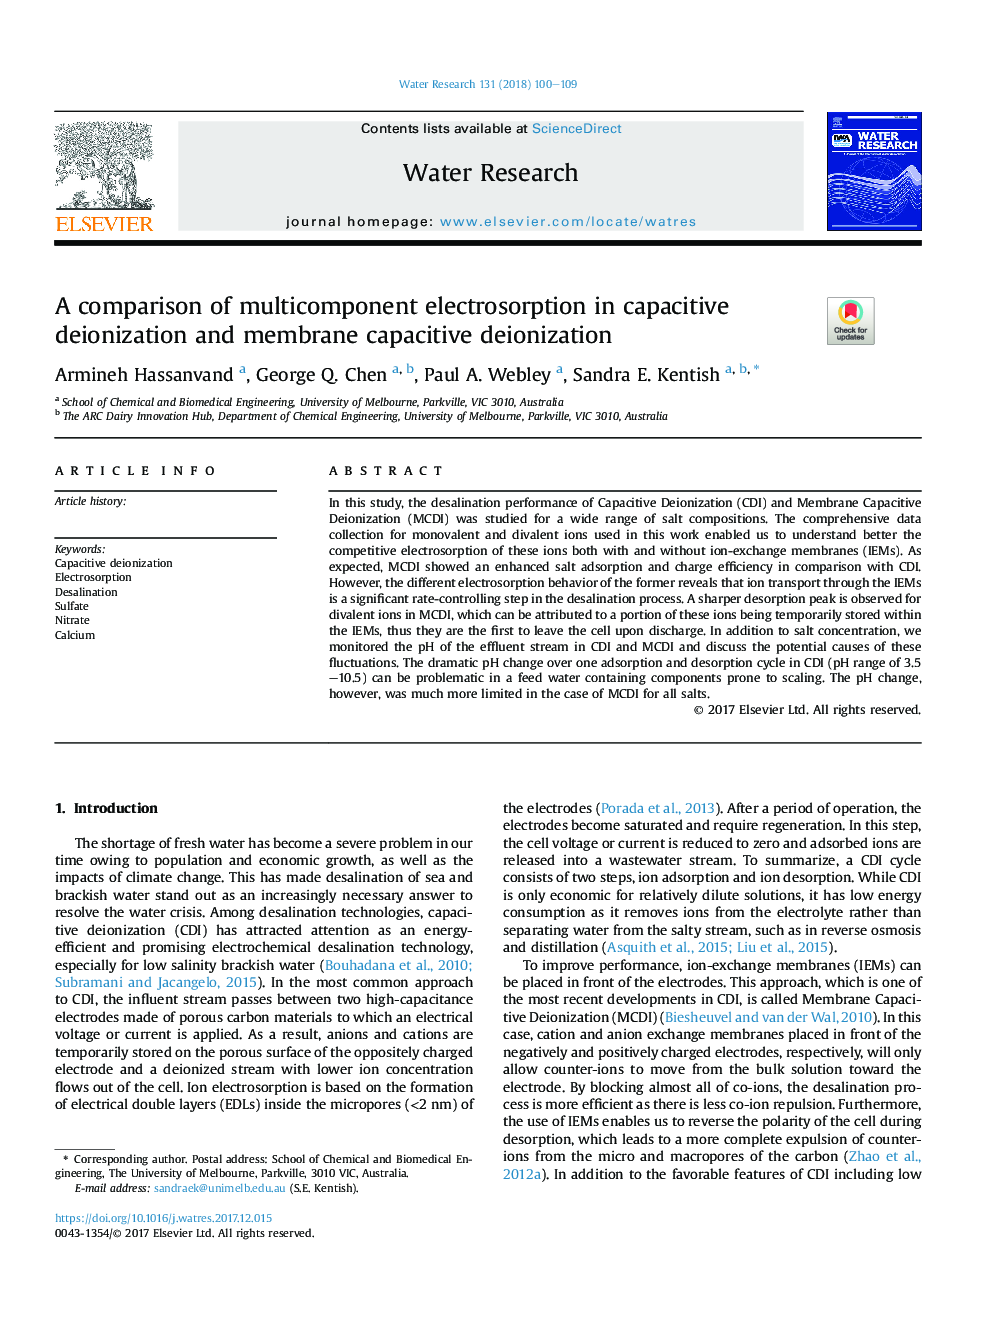 A comparison of multicomponent electrosorption in capacitive deionization and membrane capacitive deionization